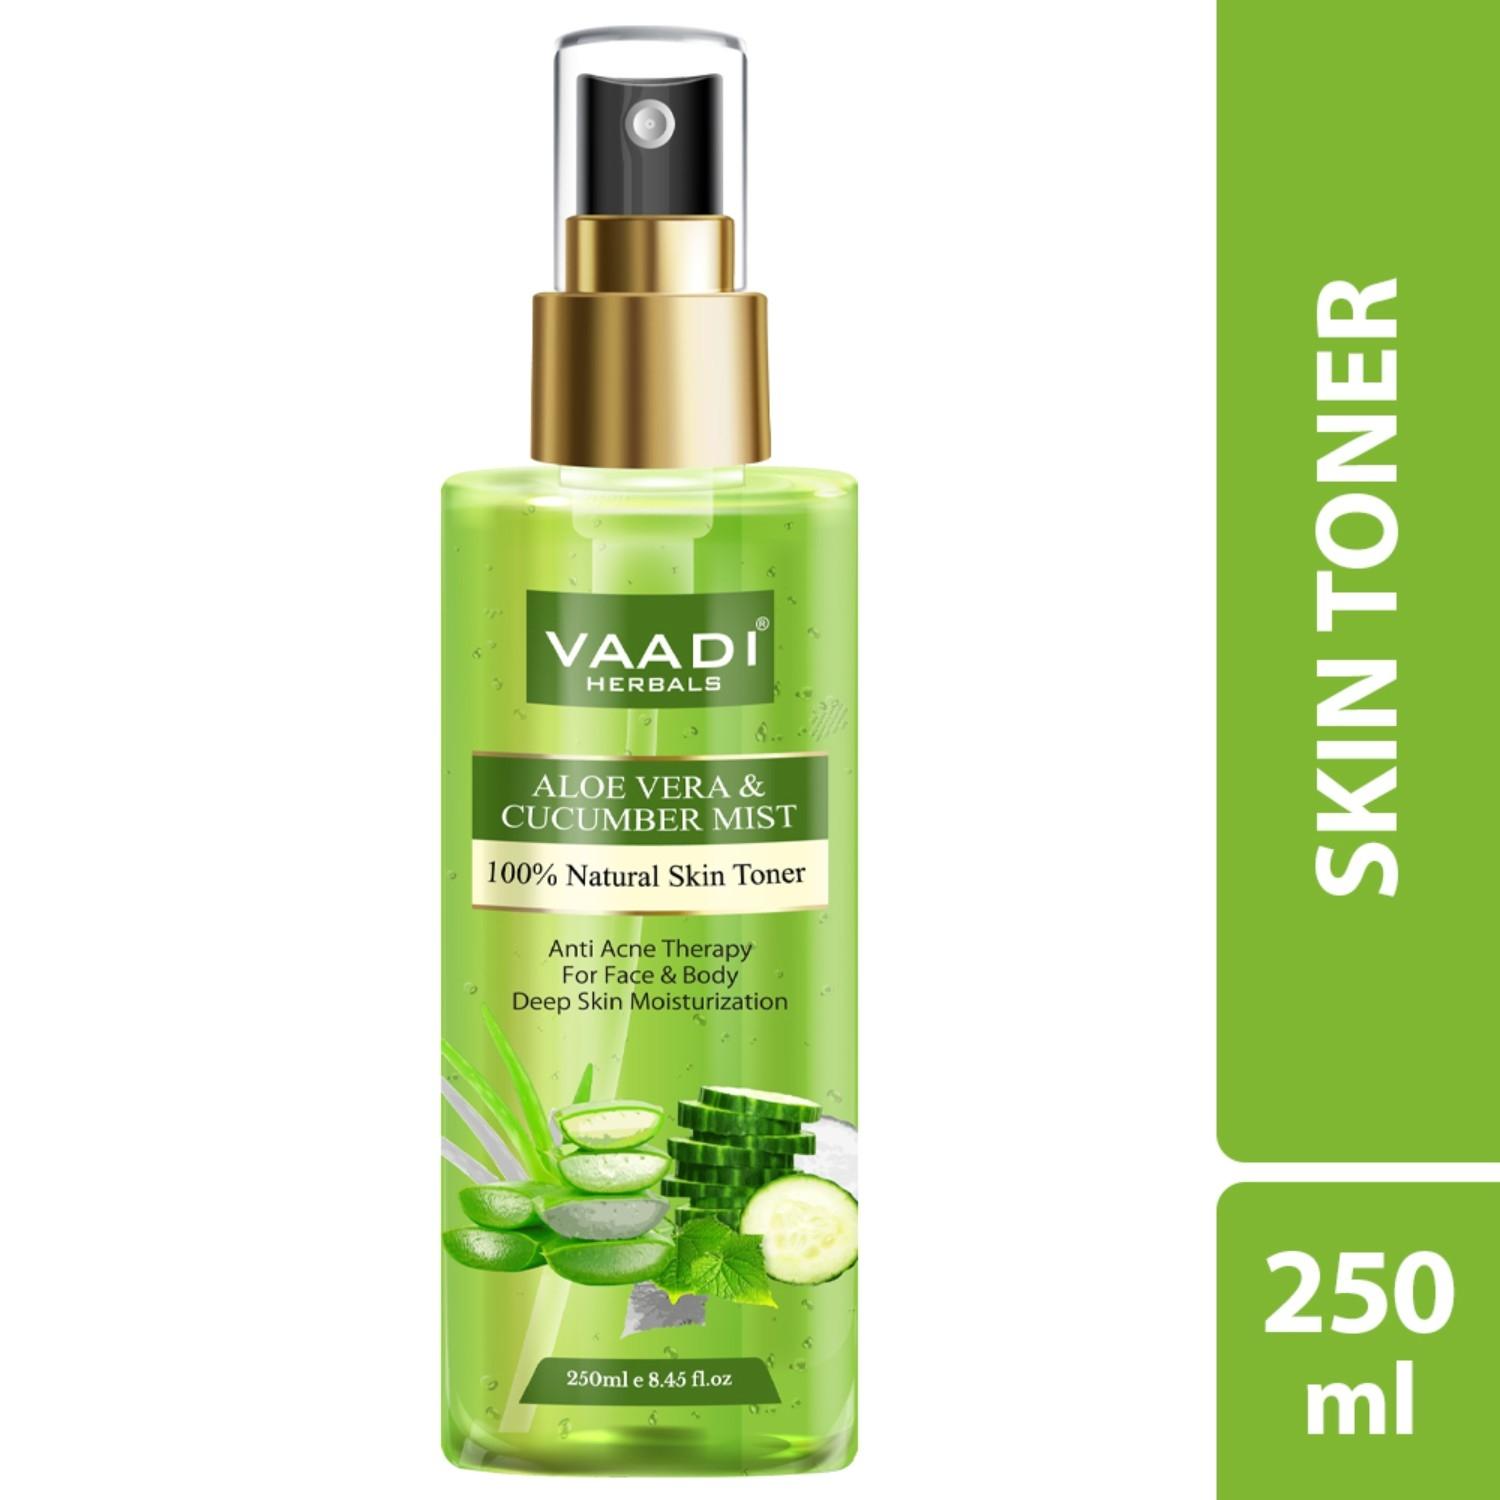 vaadi herbals aloe vera and cucumber mist 100% natural skin toner (250ml)